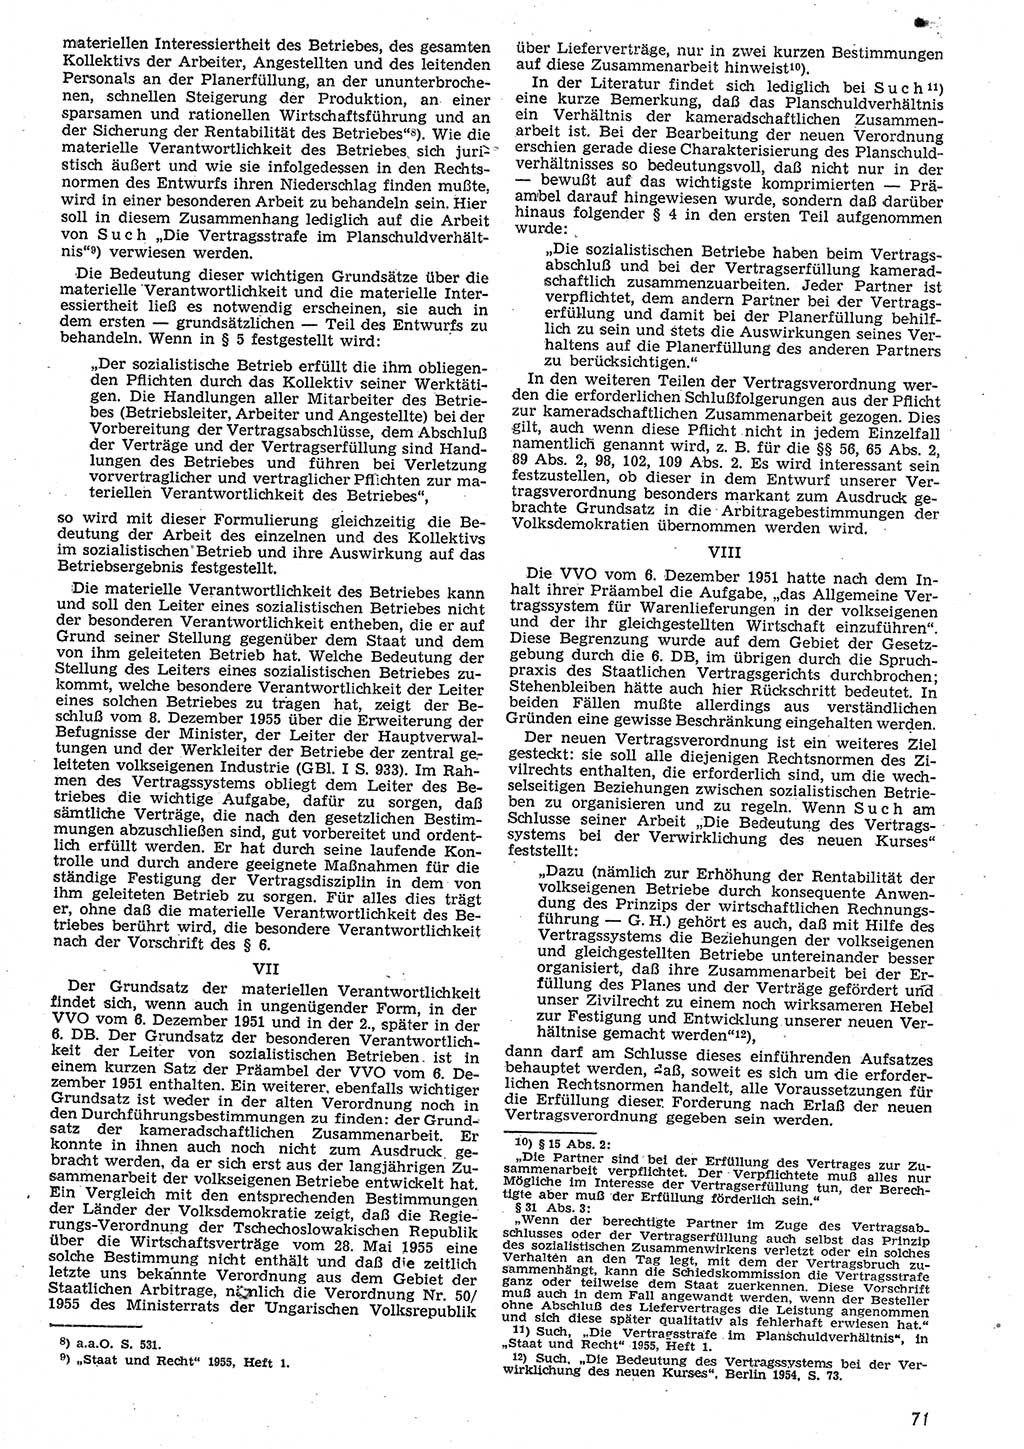 Neue Justiz (NJ), Zeitschrift für Recht und Rechtswissenschaft [Deutsche Demokratische Republik (DDR)], 10. Jahrgang 1956, Seite 71 (NJ DDR 1956, S. 71)